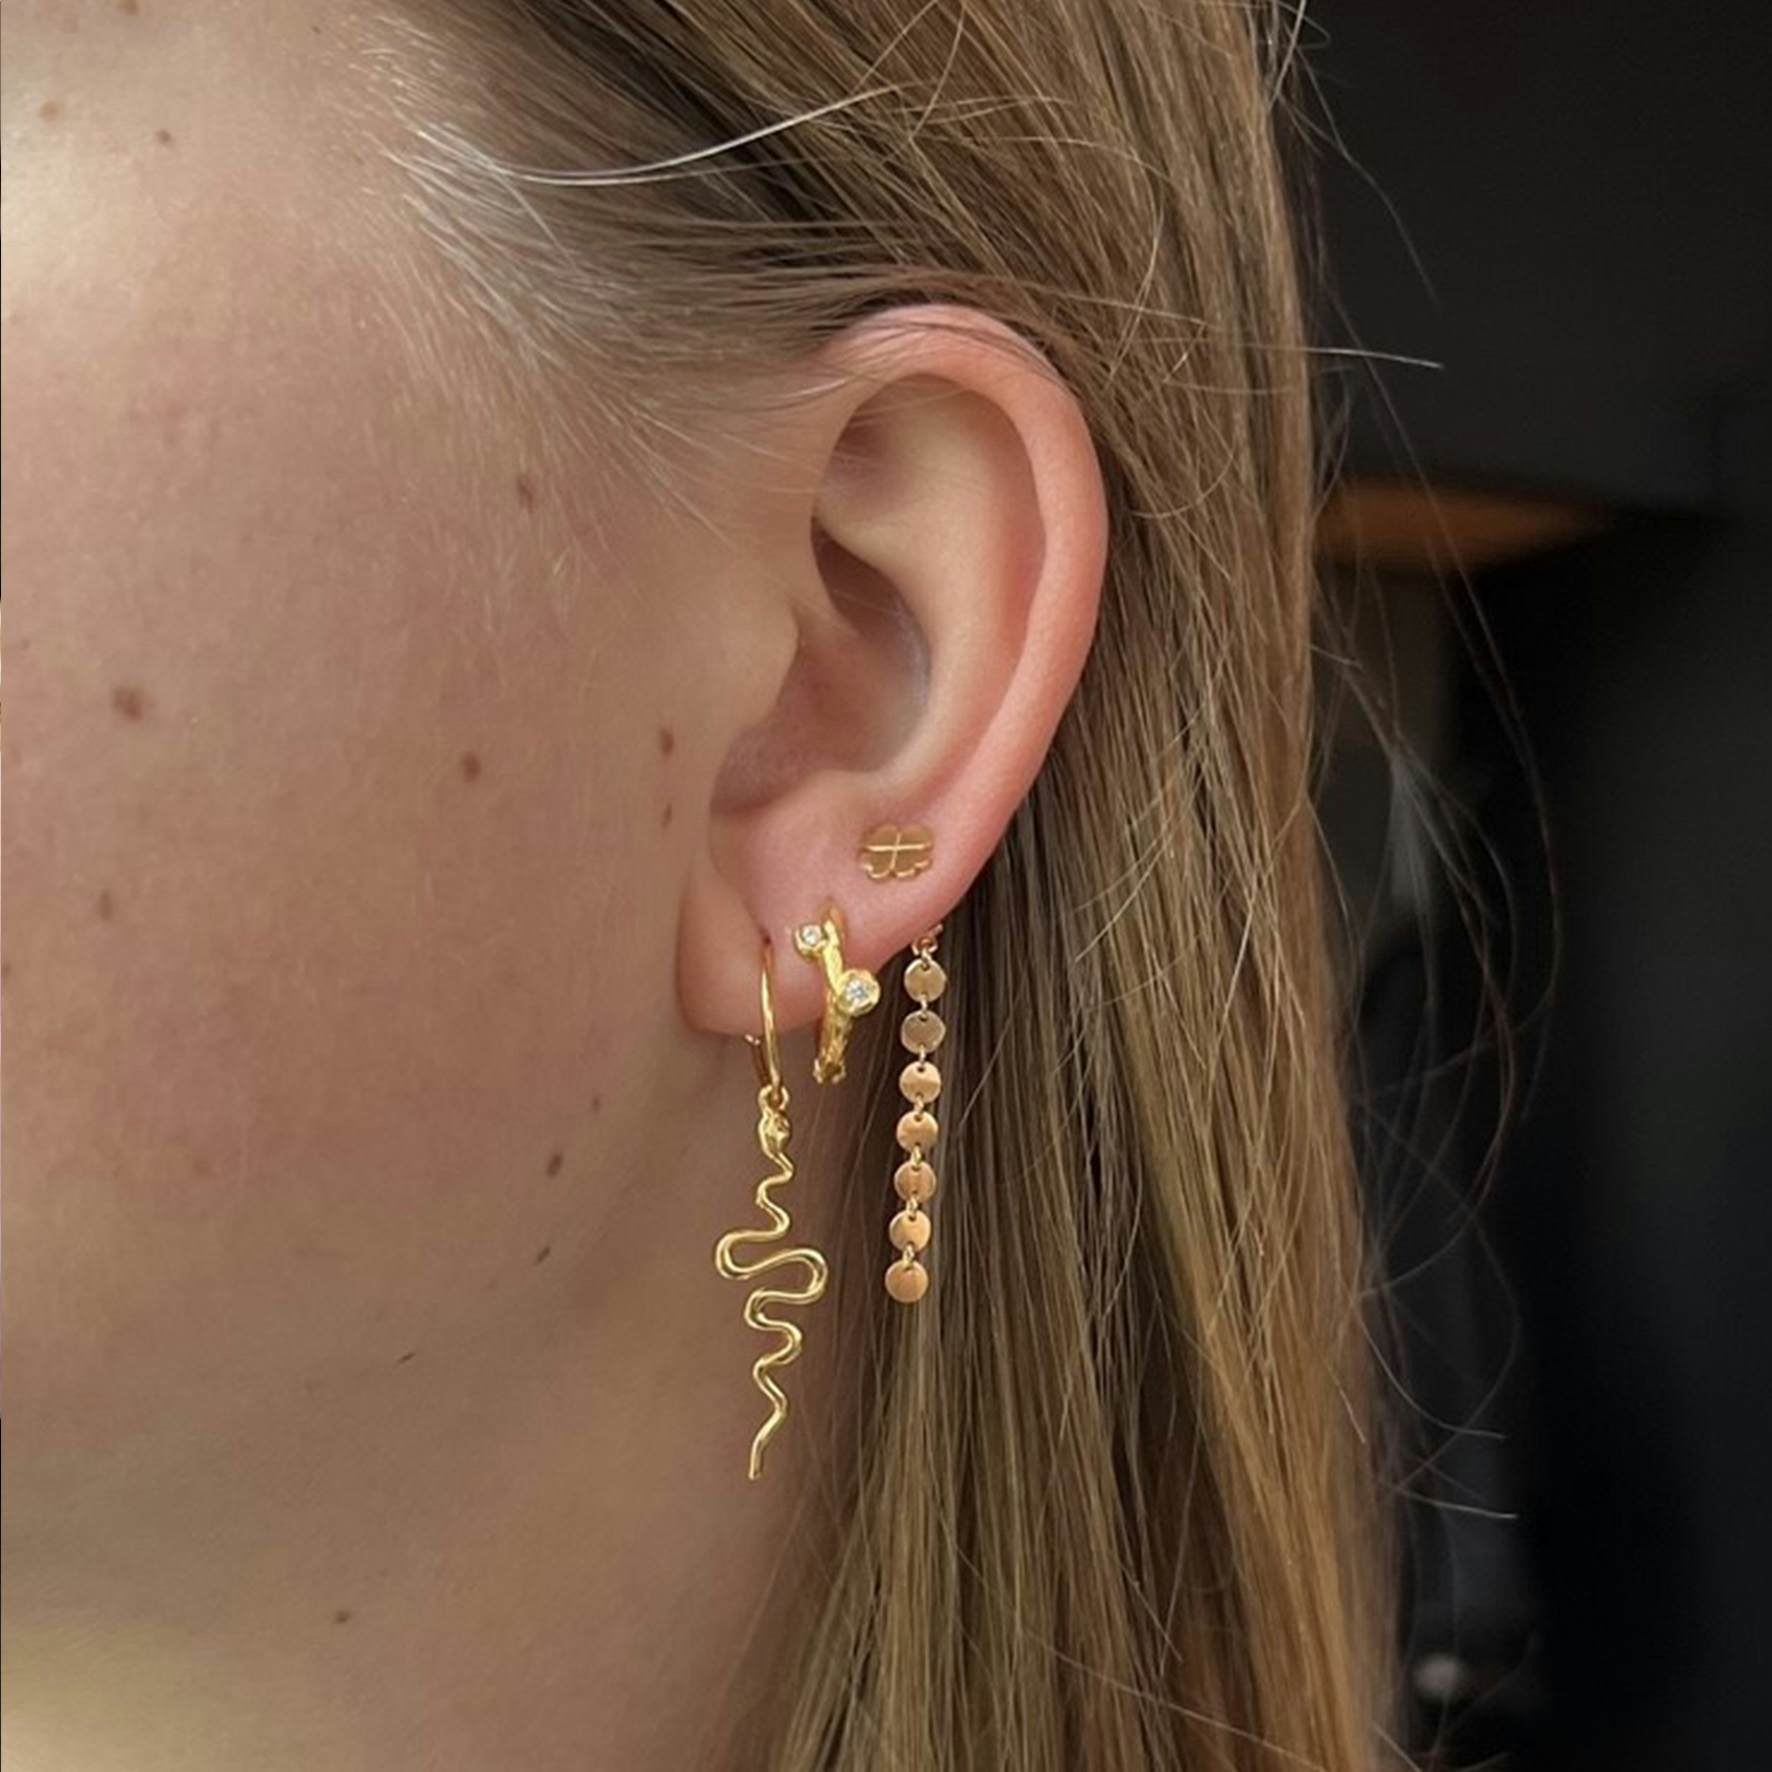 Clover Earrings from A-Hjort in 